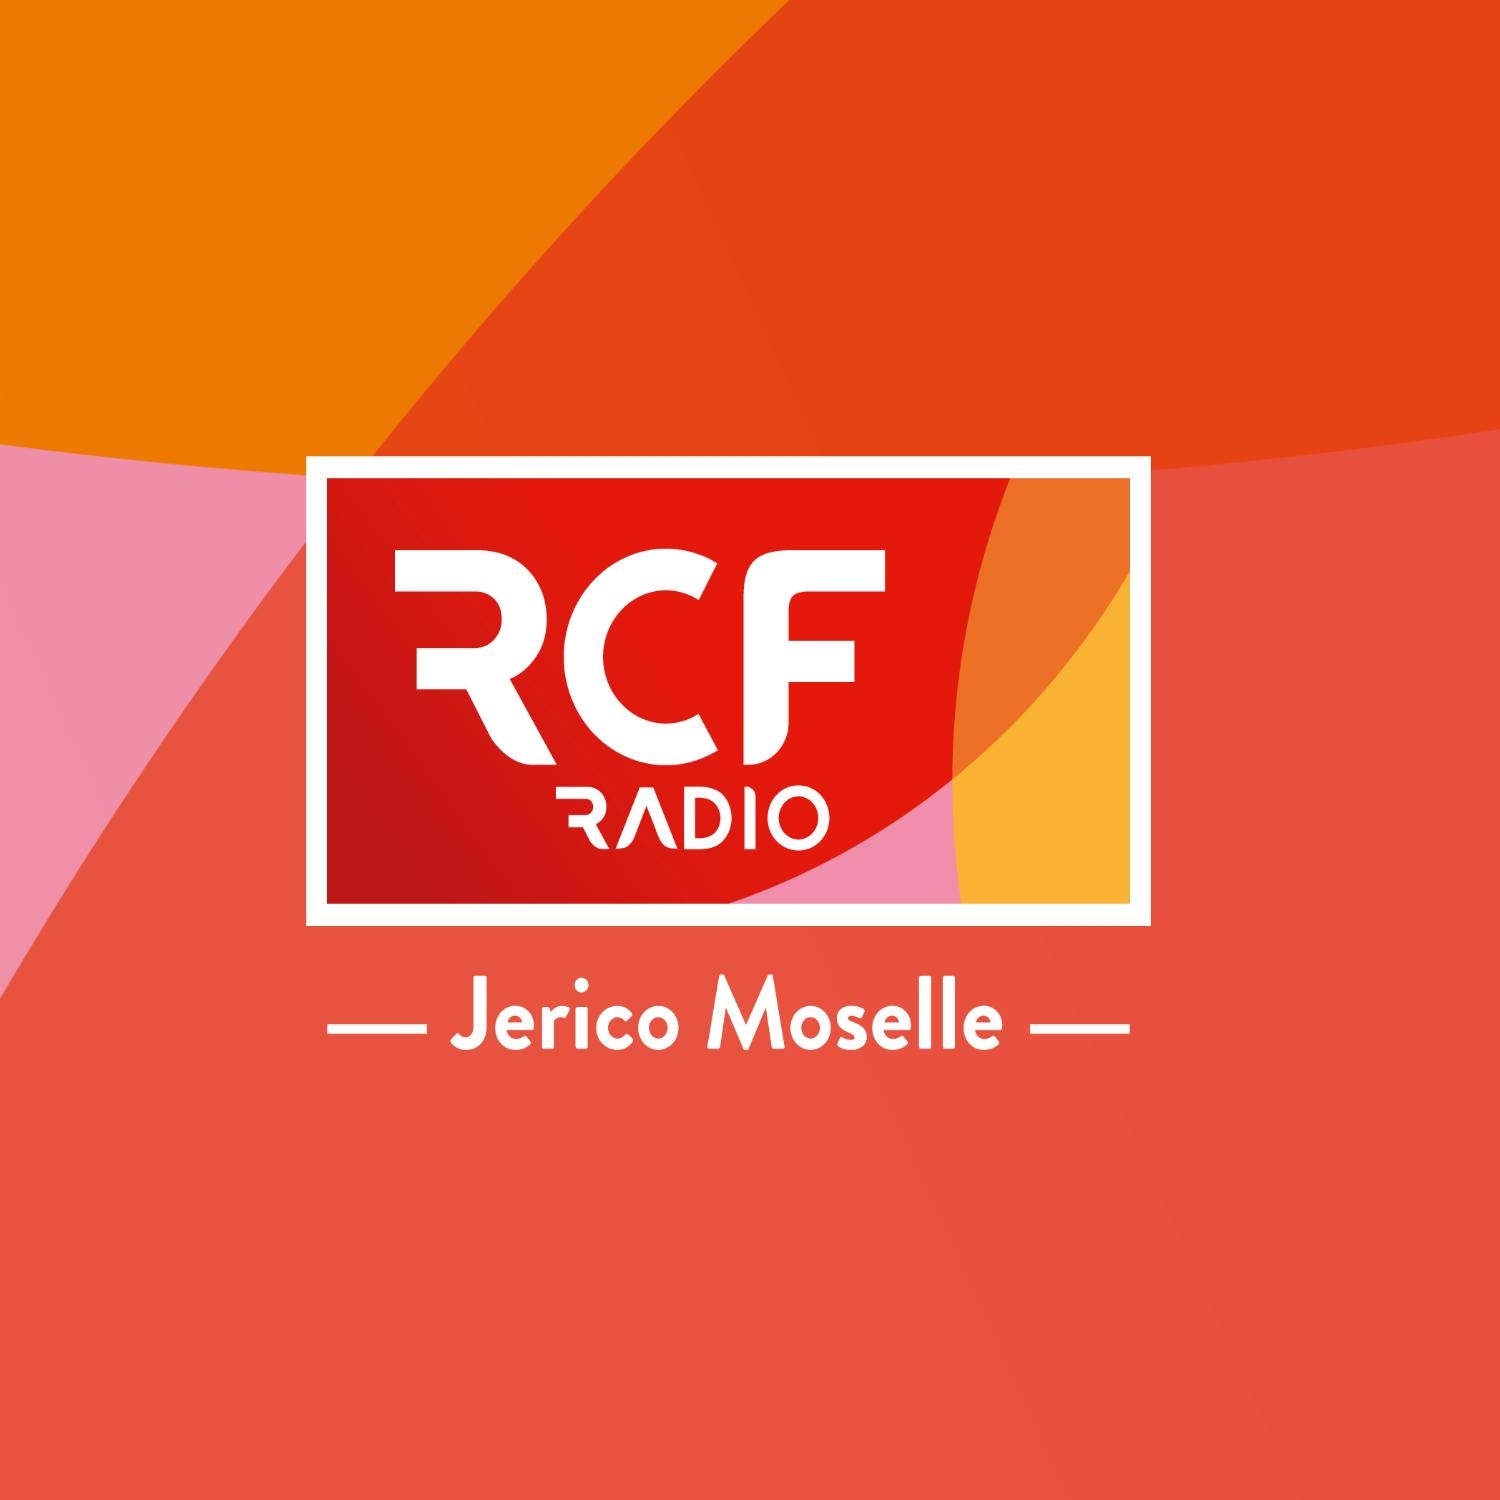 Une journée spéciale sur RCF Jerico Moselle